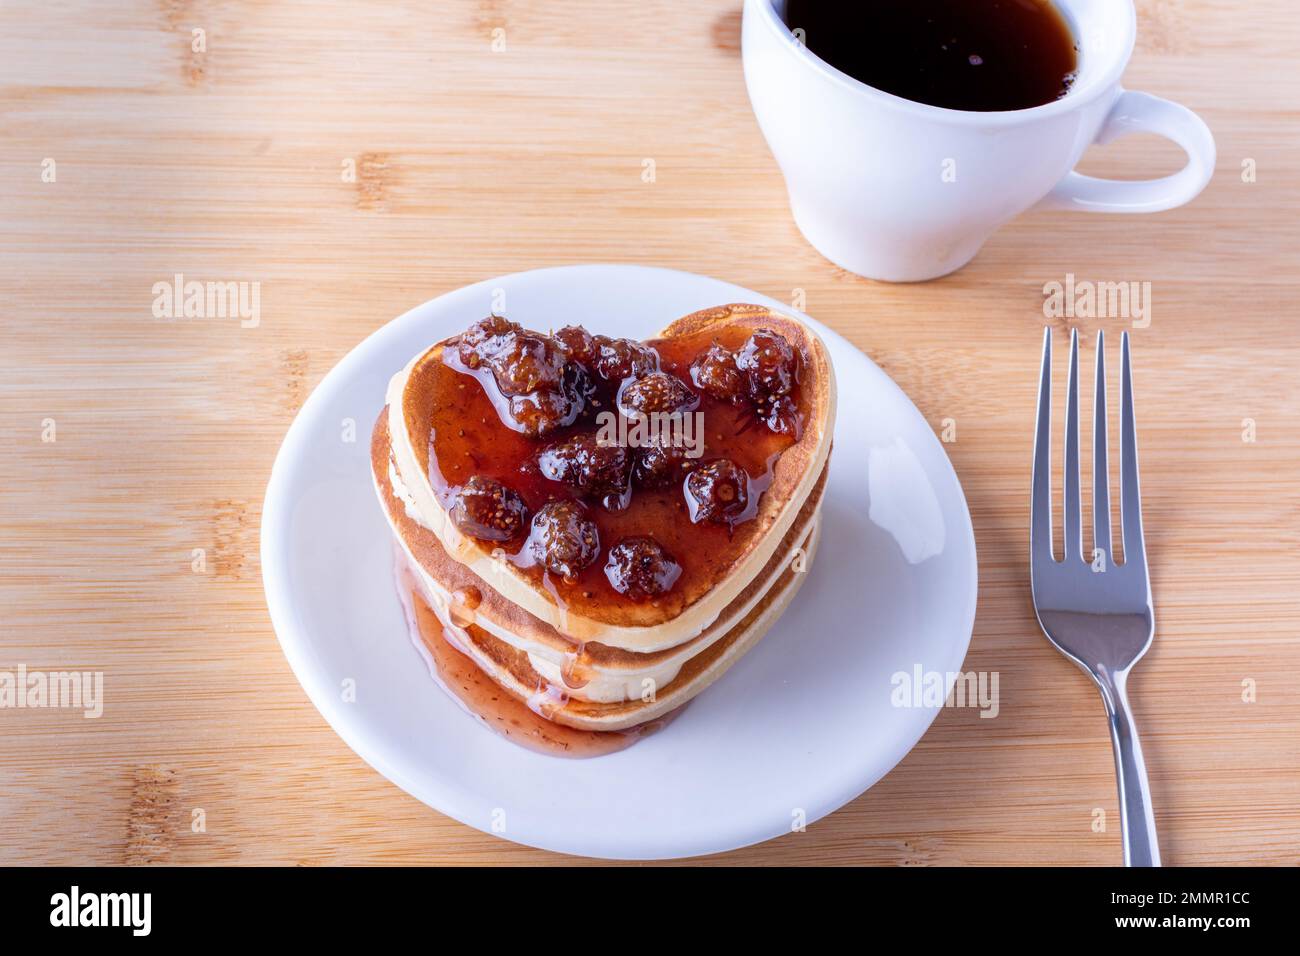 Kreatives Frühstück im Bett. Hausgemachte herzförmige Pfannkuchen mit Beerenmarmelade auf weißem Teller, Gabel und Tasse mit Kaffee oder Kakao auf Holzhintergrund. P Stockfoto